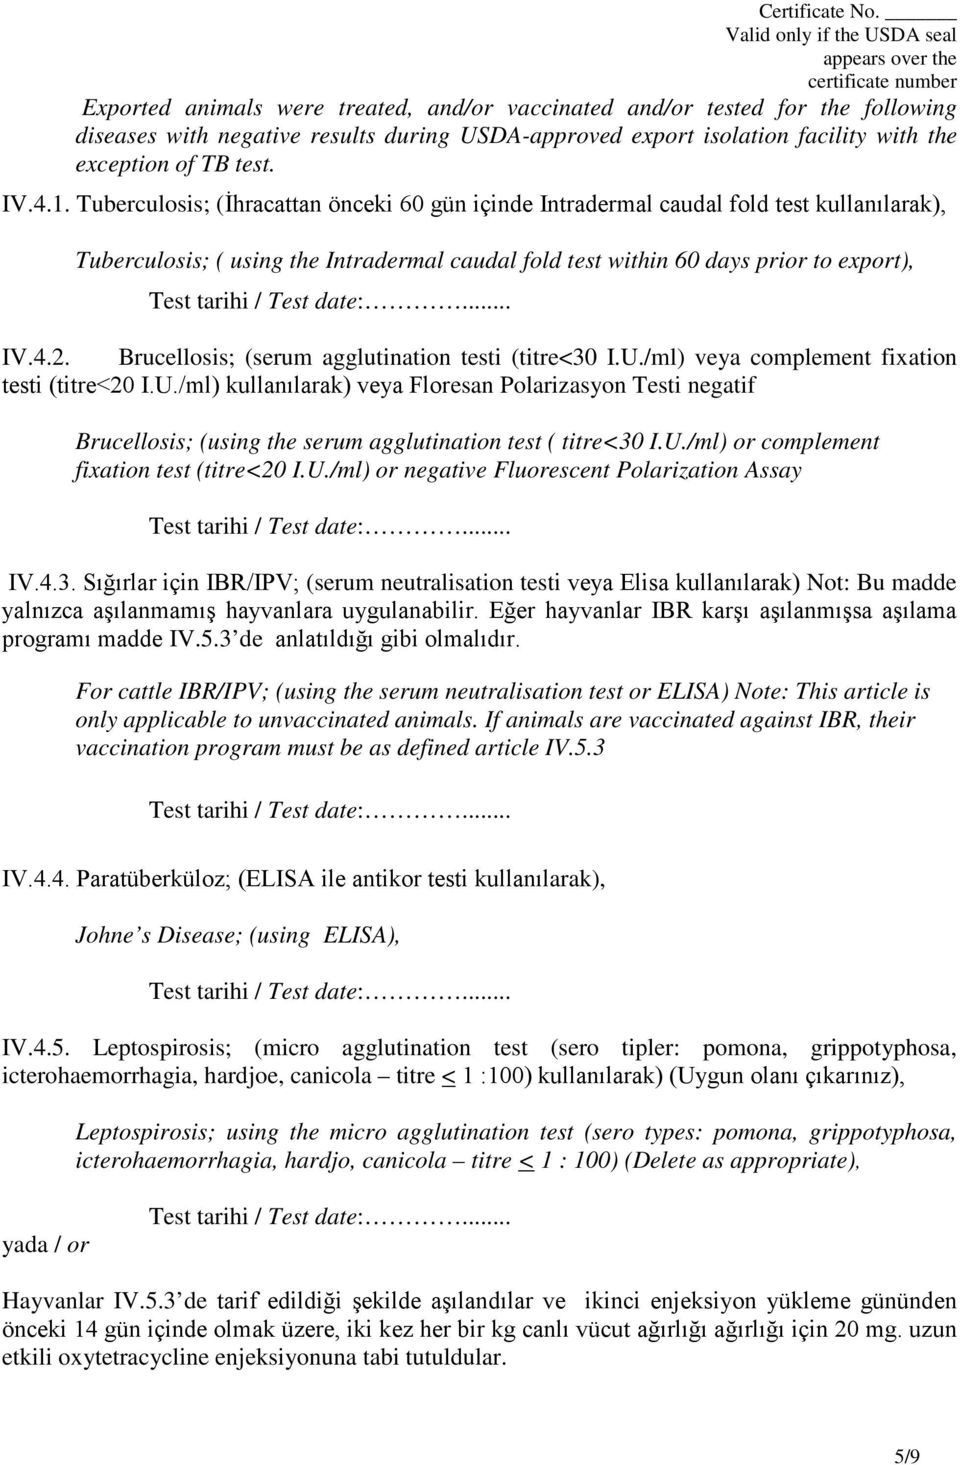 Brucellosis; (serum agglutination testi (titre<30 I.U./ml) veya complement fixation testi (titre<20 I.U./ml) kullanılarak) veya Floresan Polarizasyon Testi negatif Brucellosis; (using the serum agglutination test ( titre<30 I.